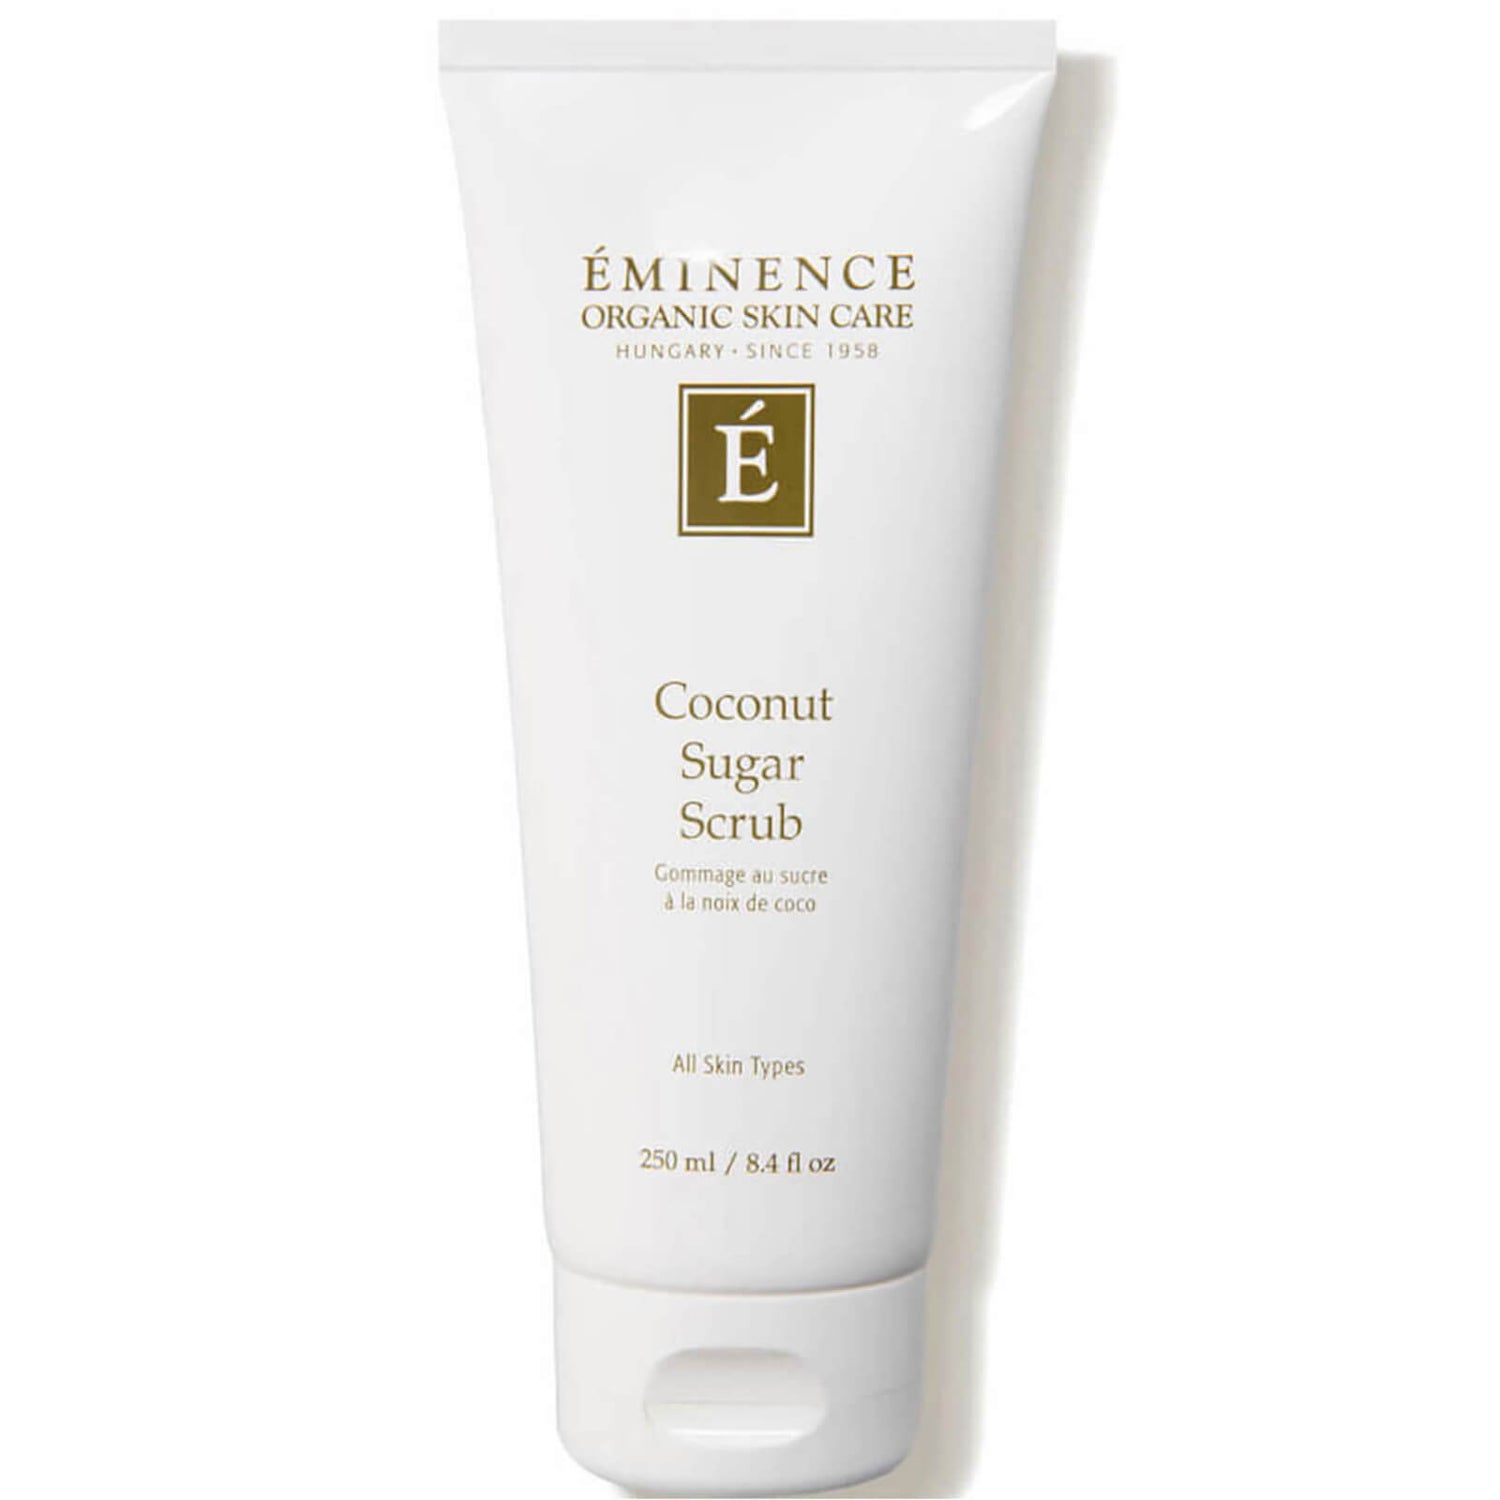 Eminence Organic Skin Care Coconut Sugar Scrub 8.4 fl. oz